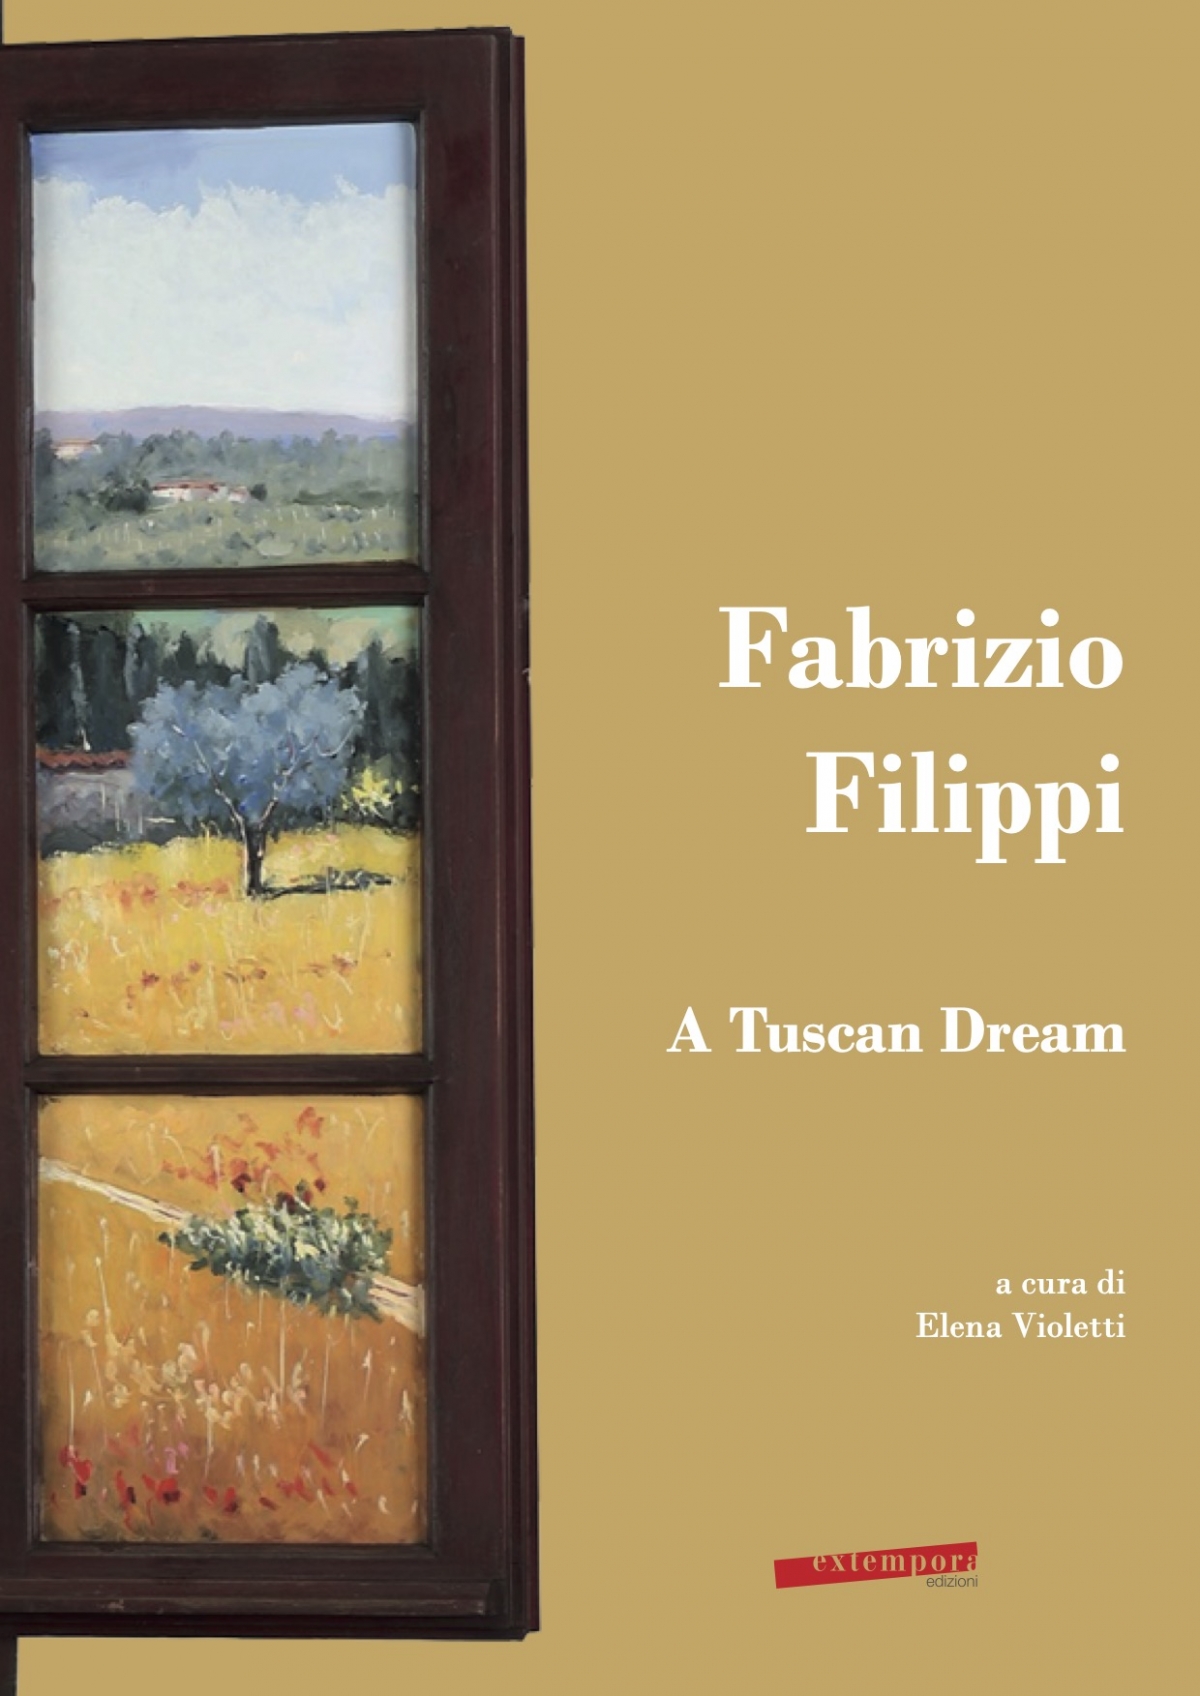 A Tuscan Dream